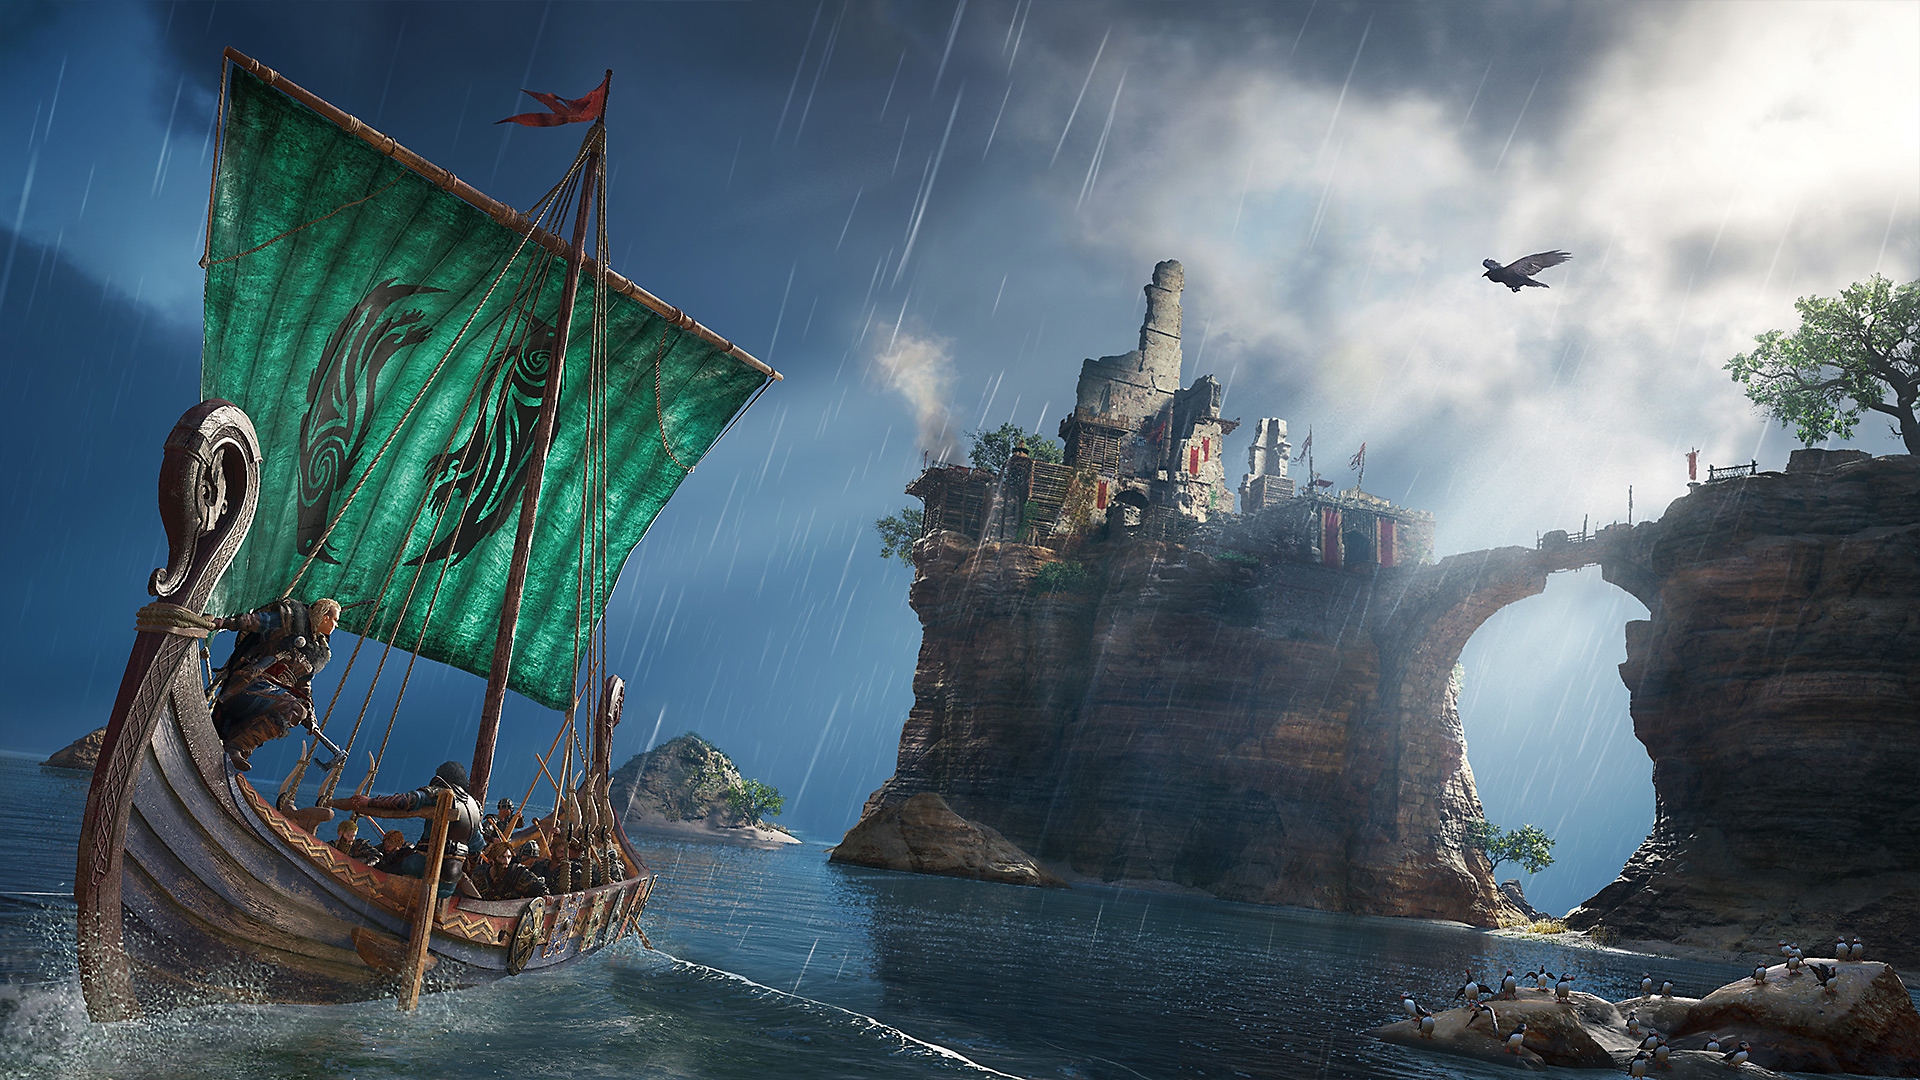 Assassin's Creed Valhalla – kuvakaappaus, jossa näkyy hahmo viikinkilaivassa katselemassa korkealla saarella näkyvää rakennusta